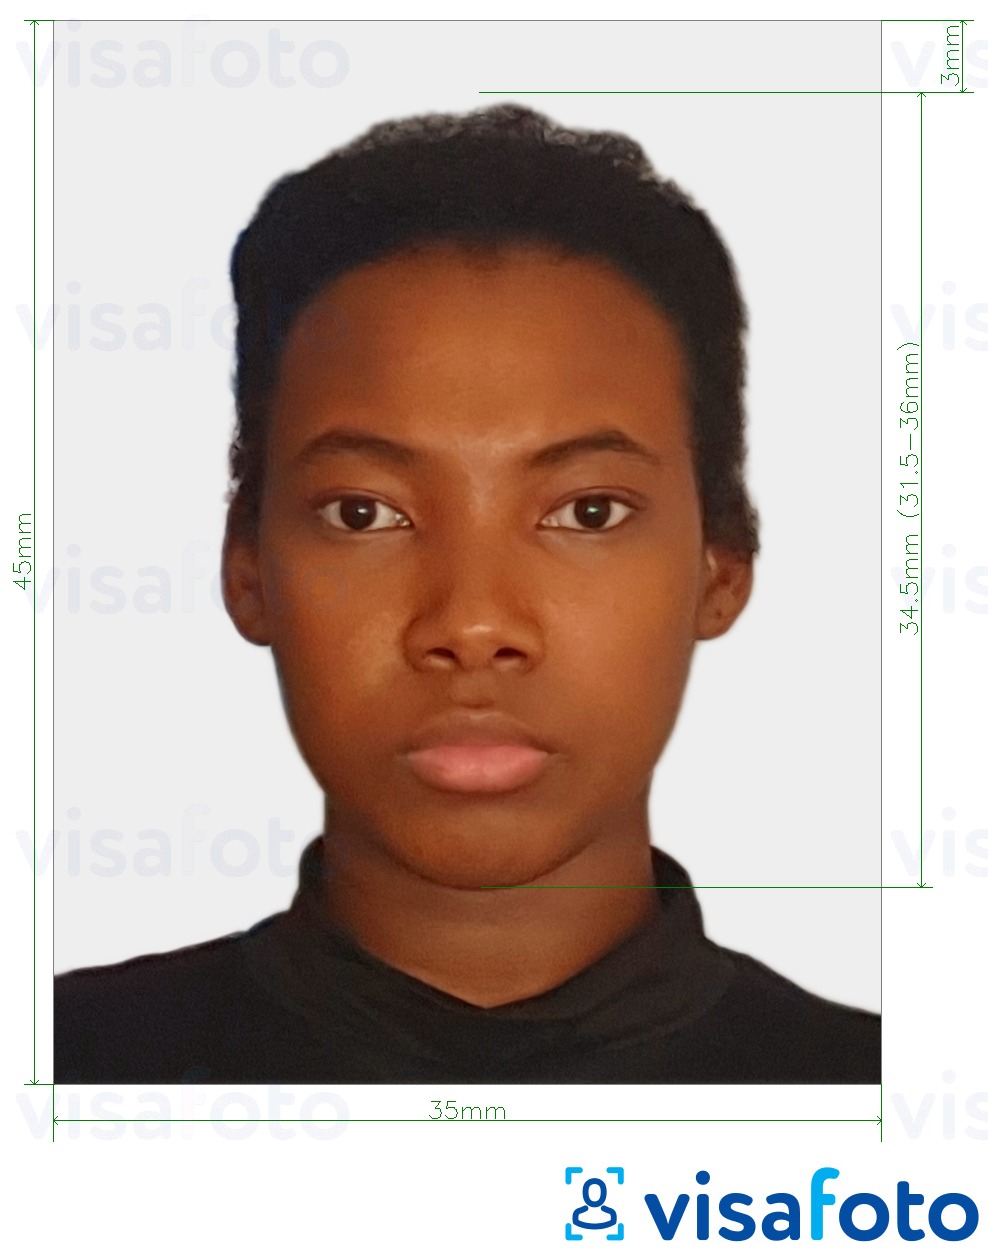 Exemples sur des photos pour Visa Suriname 45x35 mm (1.77x1.37 inch) avec les spécifications de taille exactes